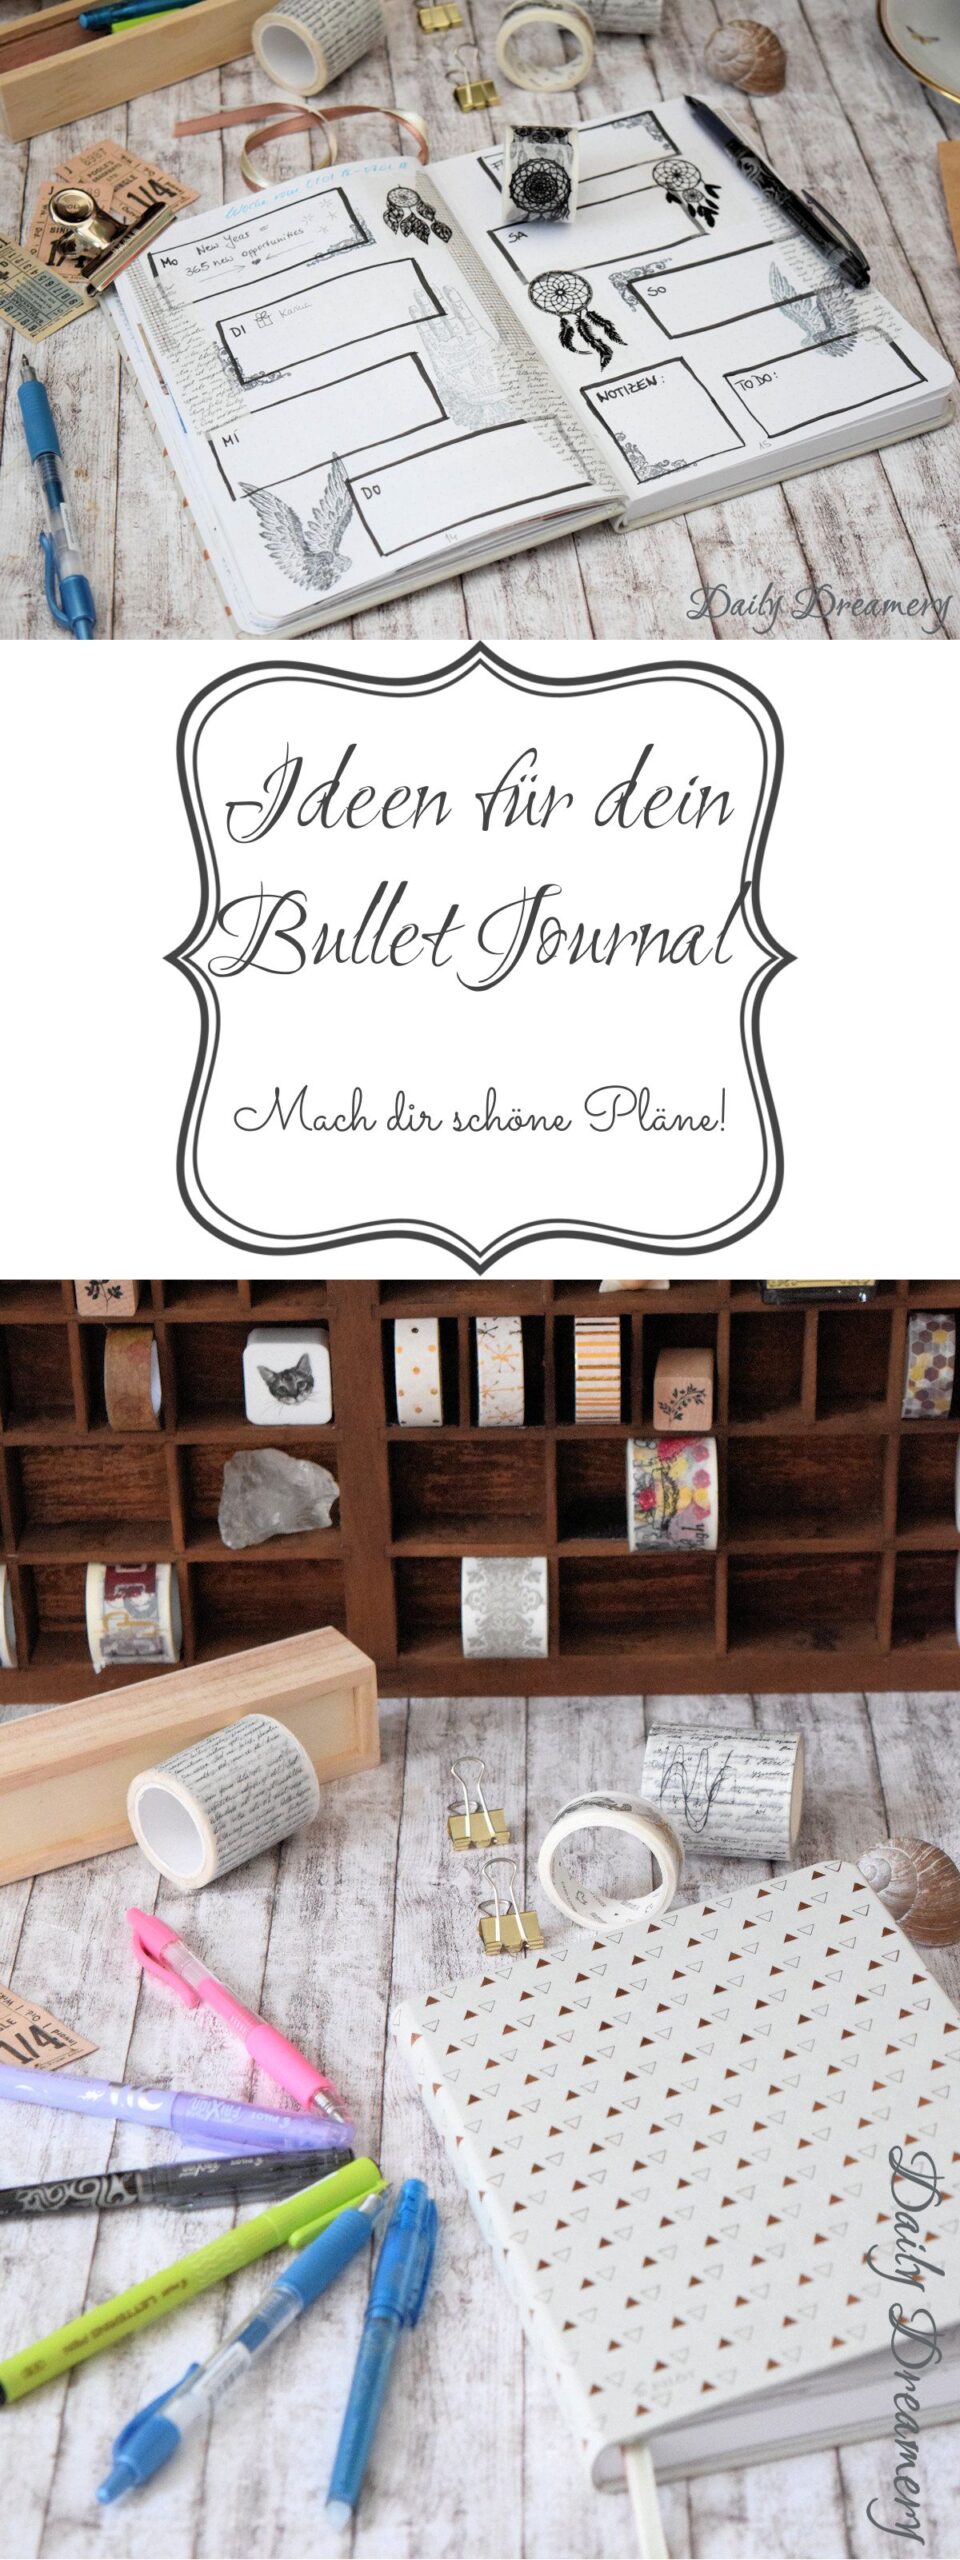 kreative Ideen für dein Bullet Journal - mach dir schöne Pläne!